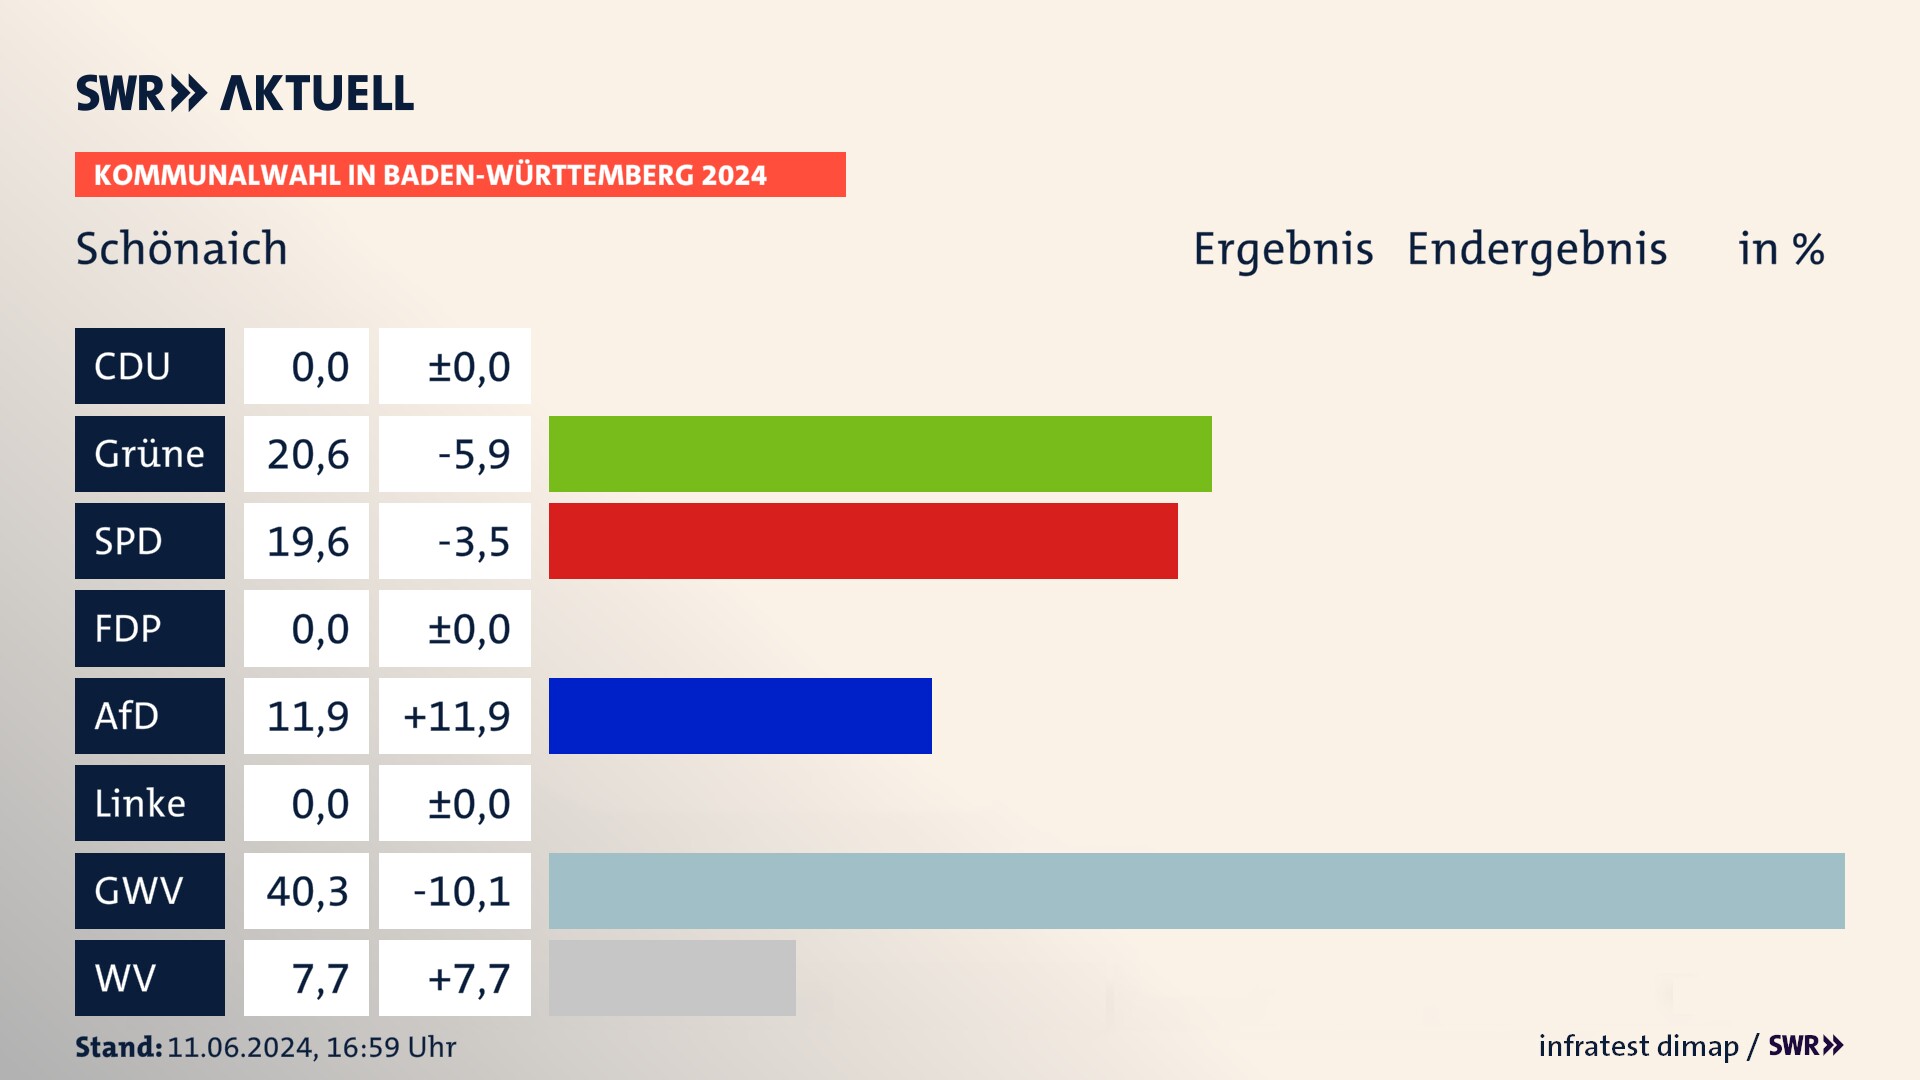 Kommunalwahl 2024 Endergebnis Zweitstimme für Schönaich. In Schönaich erzielen die Grünen 20,6 Prozent der gültigen  Stimmen. Die SPD landet bei 19,6 Prozent. Die AfD erreicht 11,9 Prozent. Die Gemeinsame Wahlvorschläge kommen auf 40,3 Prozent. Die Wählervereinigungen landen bei 7,7 Prozent.